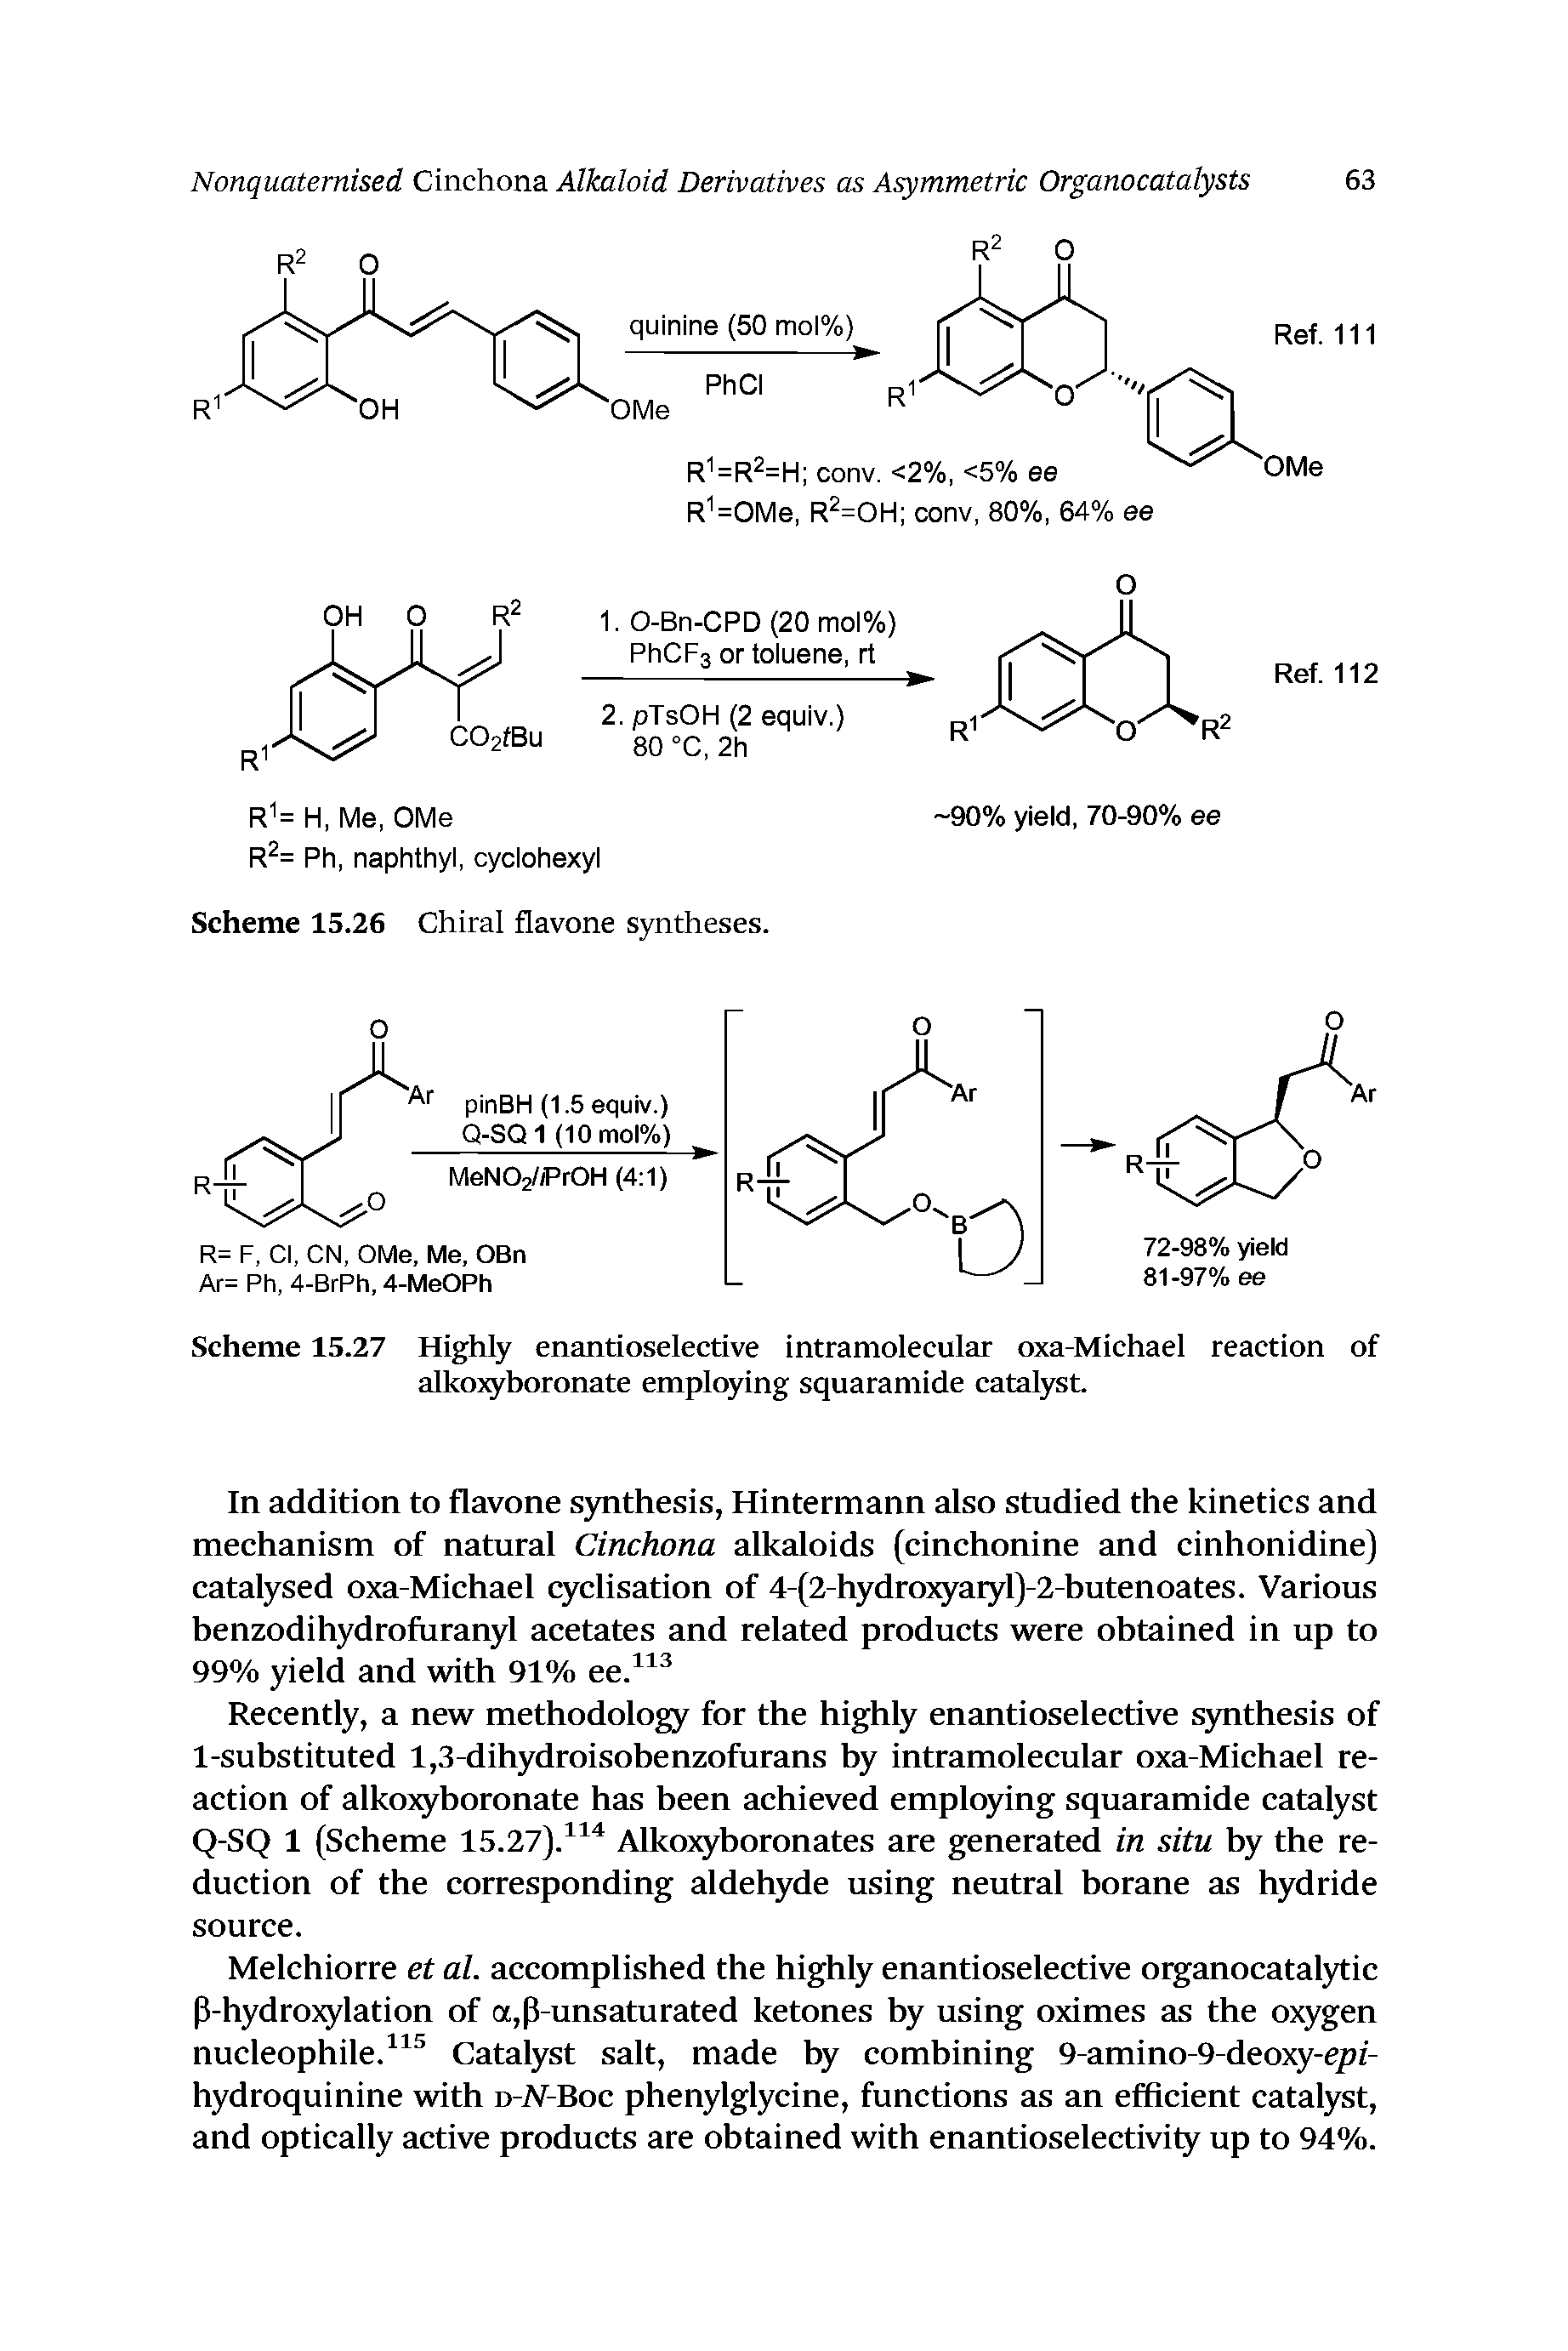 Scheme 15.27 Highly enantioselective intramolecular oxa-Michael reaction of alkojg boronate employing squaramide eatalyst.